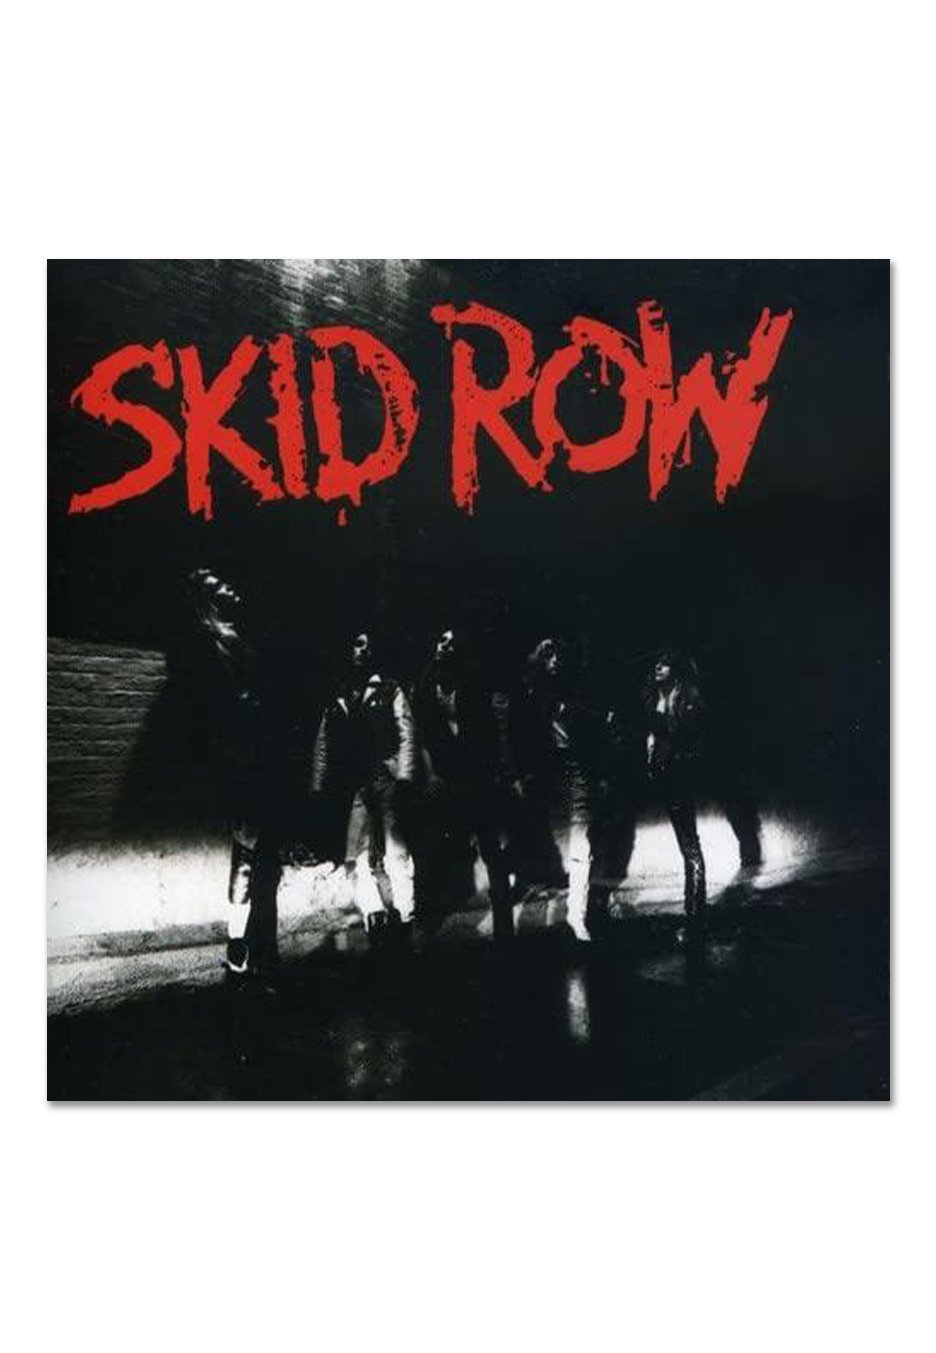 Skid Row - Skid Row - Vinyl